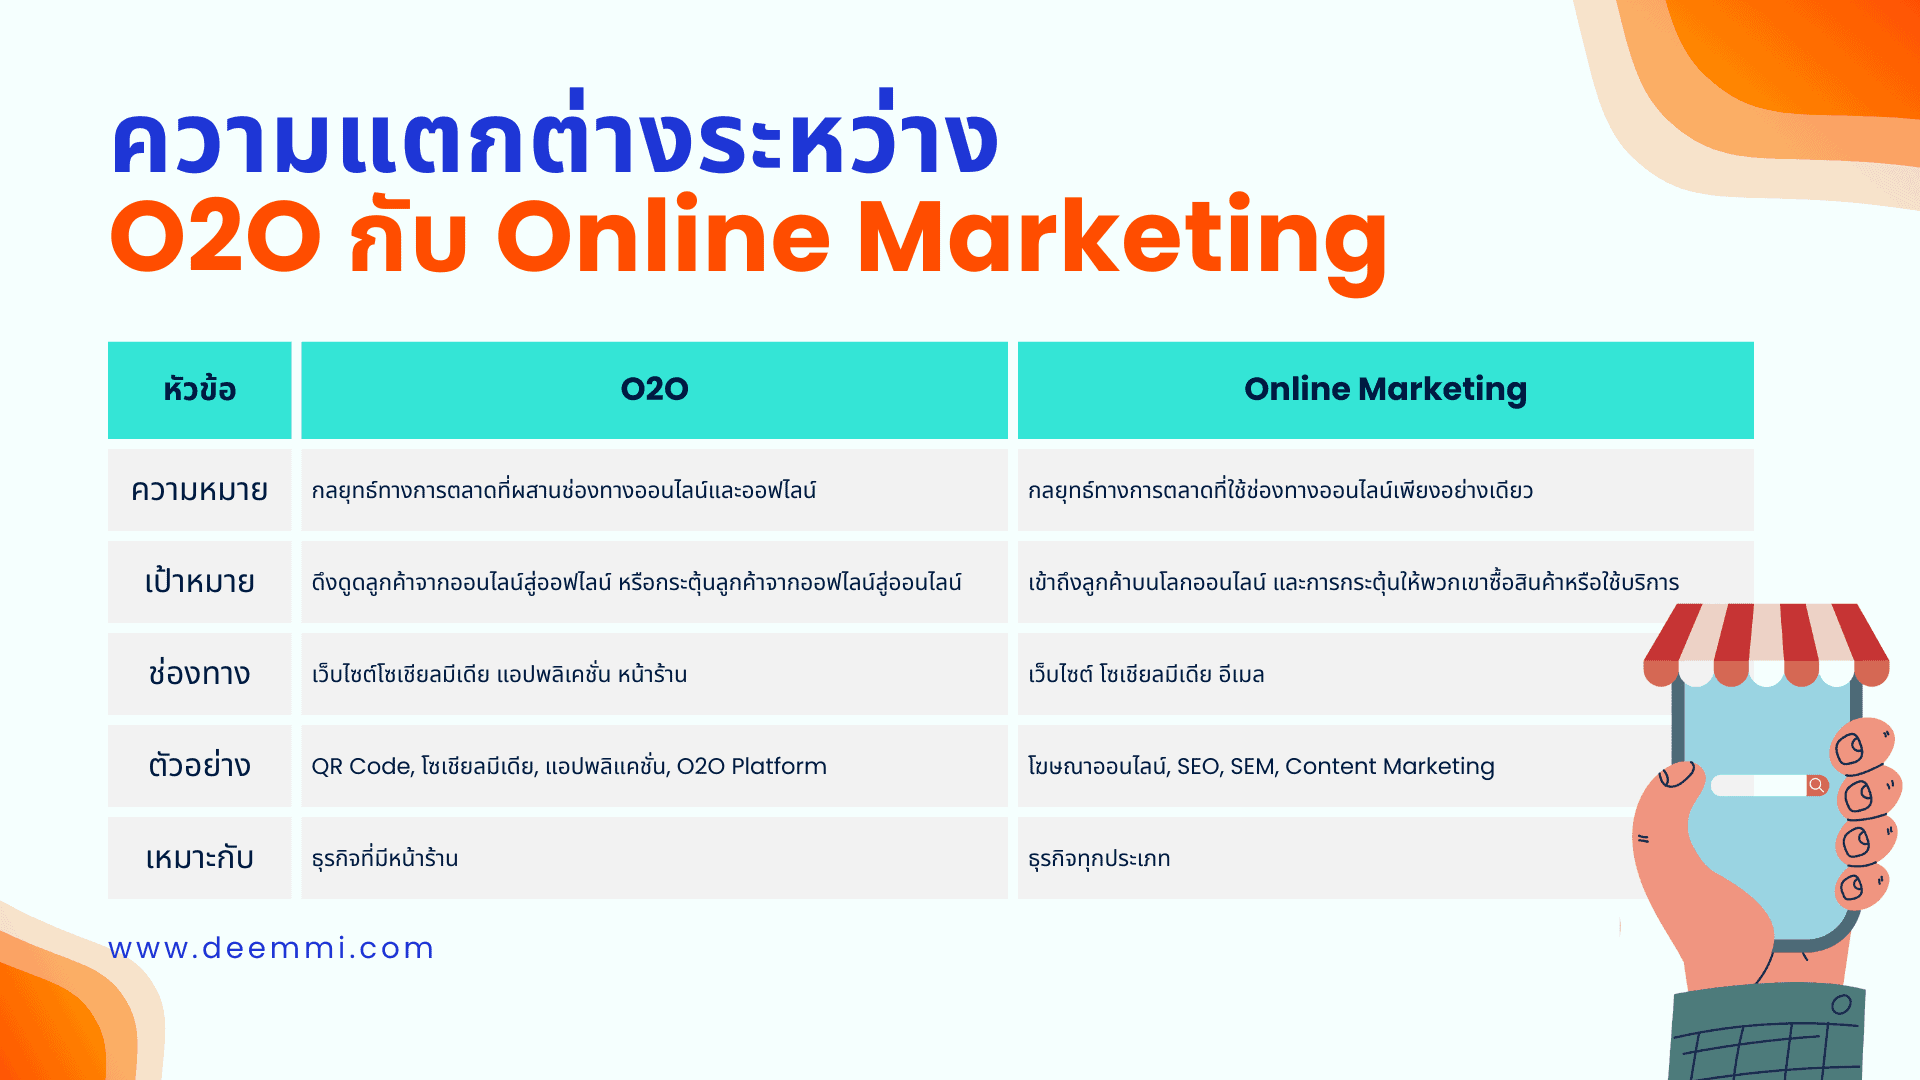 ความแตกต่างระหว่าง O2O กับ Online Marketing (Compare between O2O and Online Marketing)